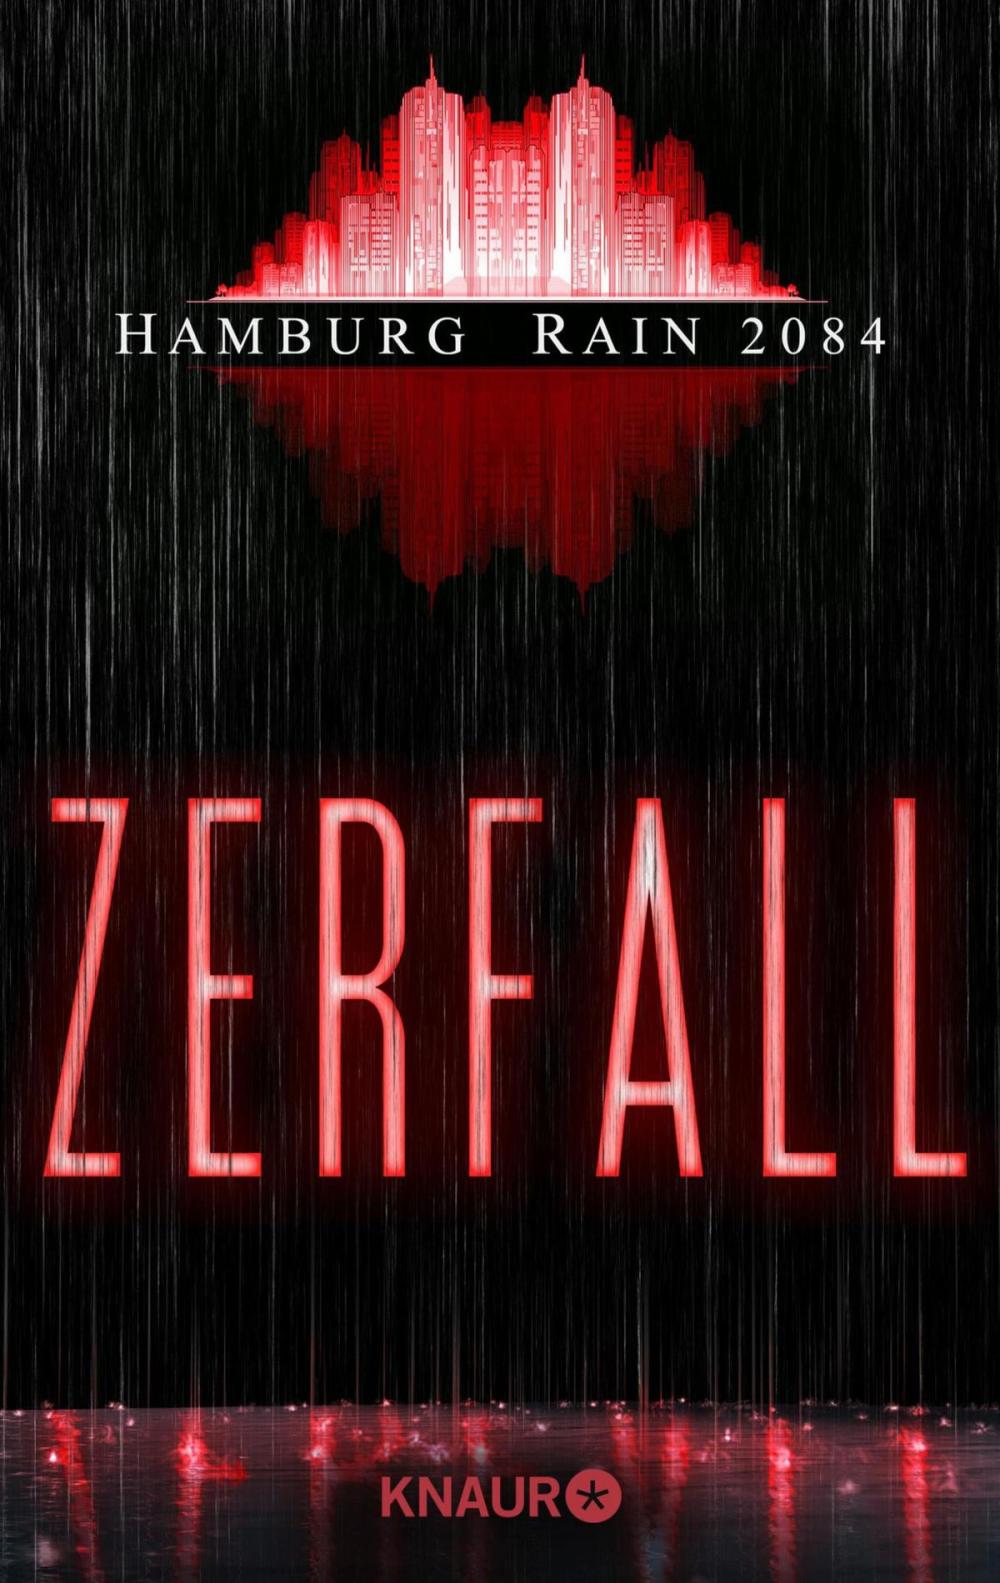 Big bigCover of Hamburg Rain 2084. Zerfall